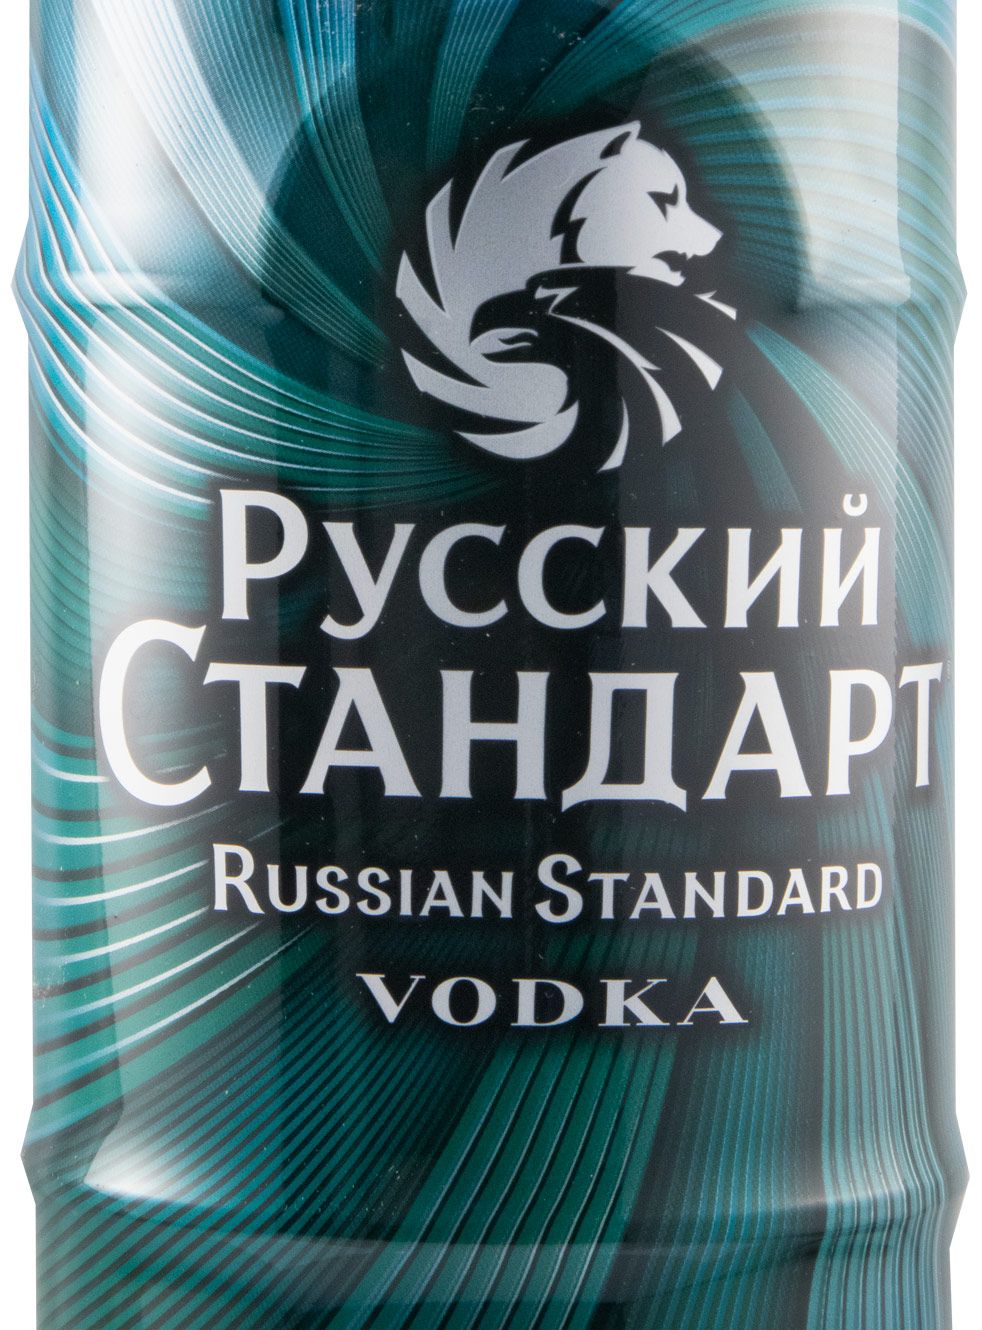 Vodka Russian Standard Malachite Edition 1L